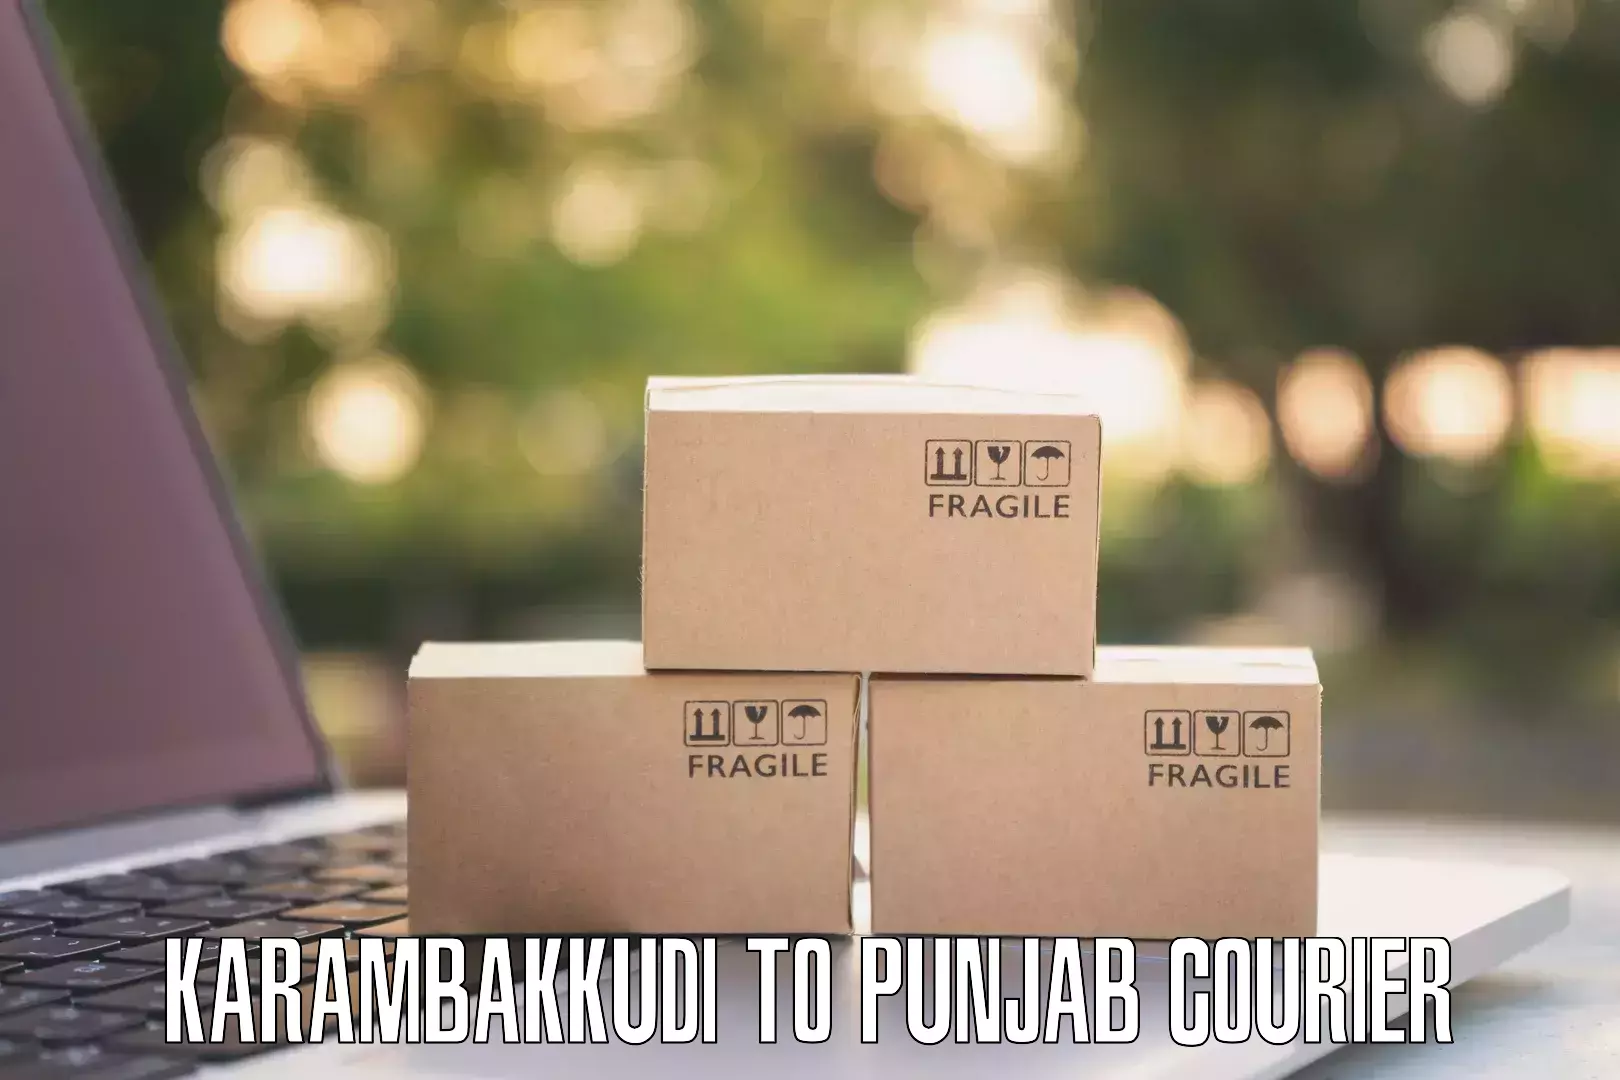 Urban courier service in Karambakkudi to Patran